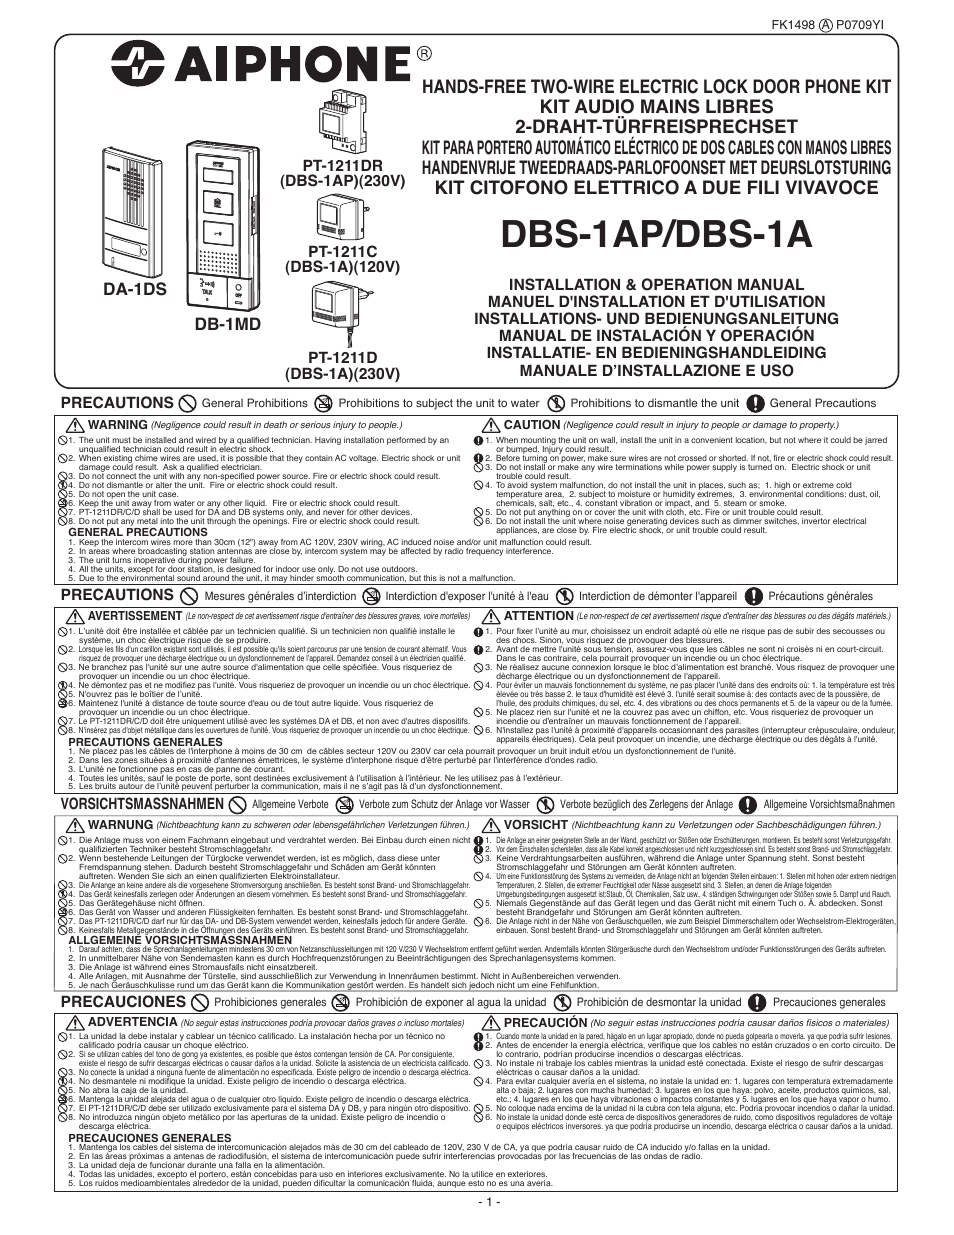 DBS-1A